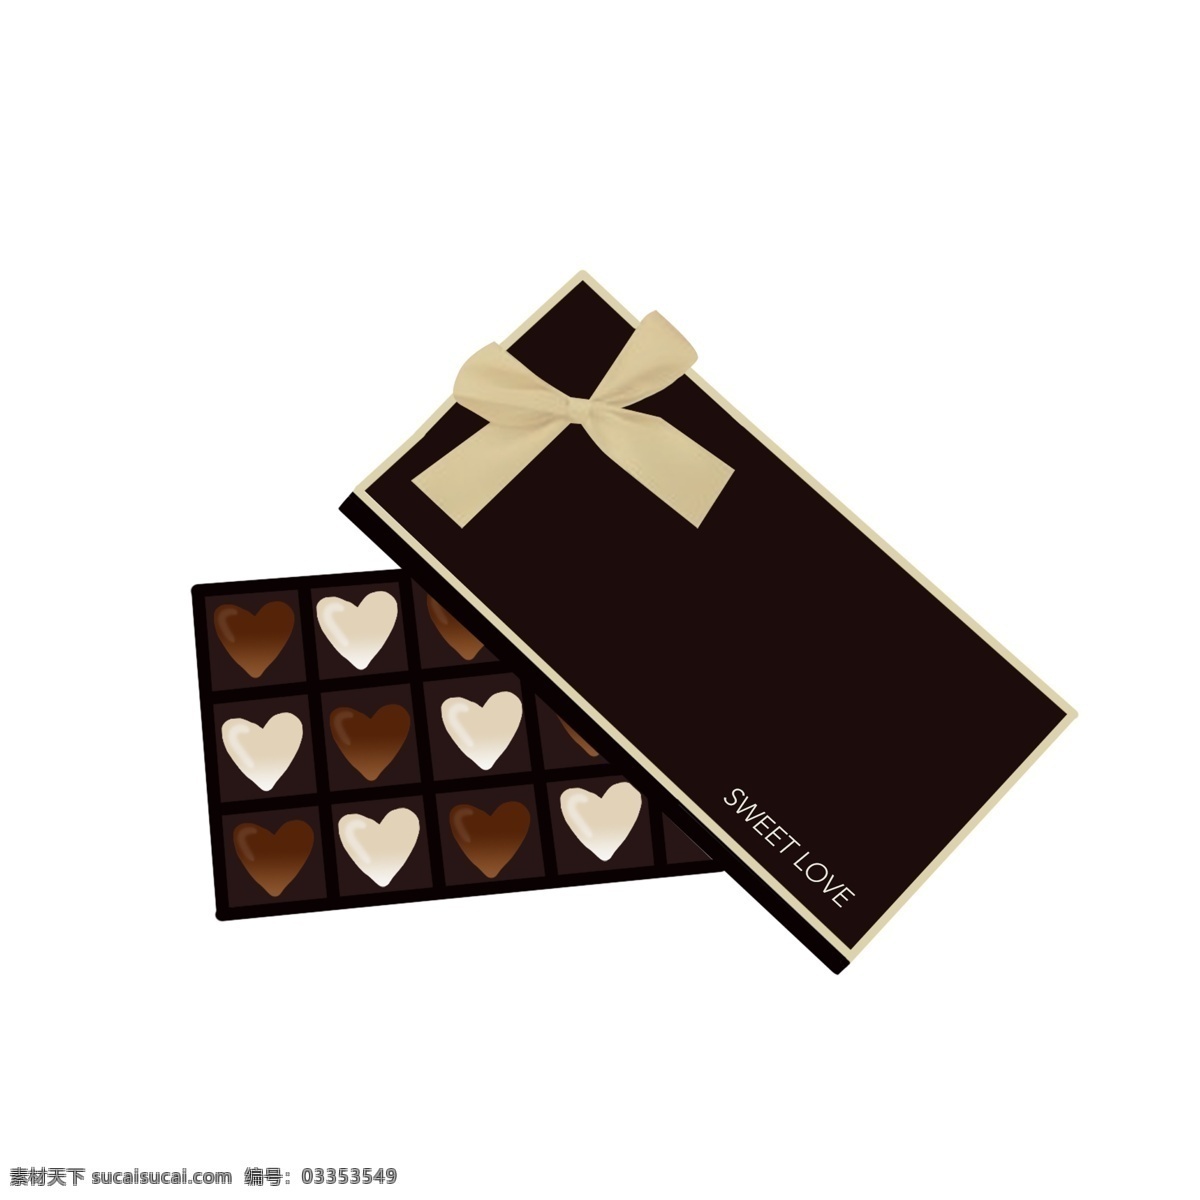 手绘 爱情 巧克力 插画 手绘巧克力 黑巧克力 白巧克力 爱情巧克力 巧克力插画 巧克力插图